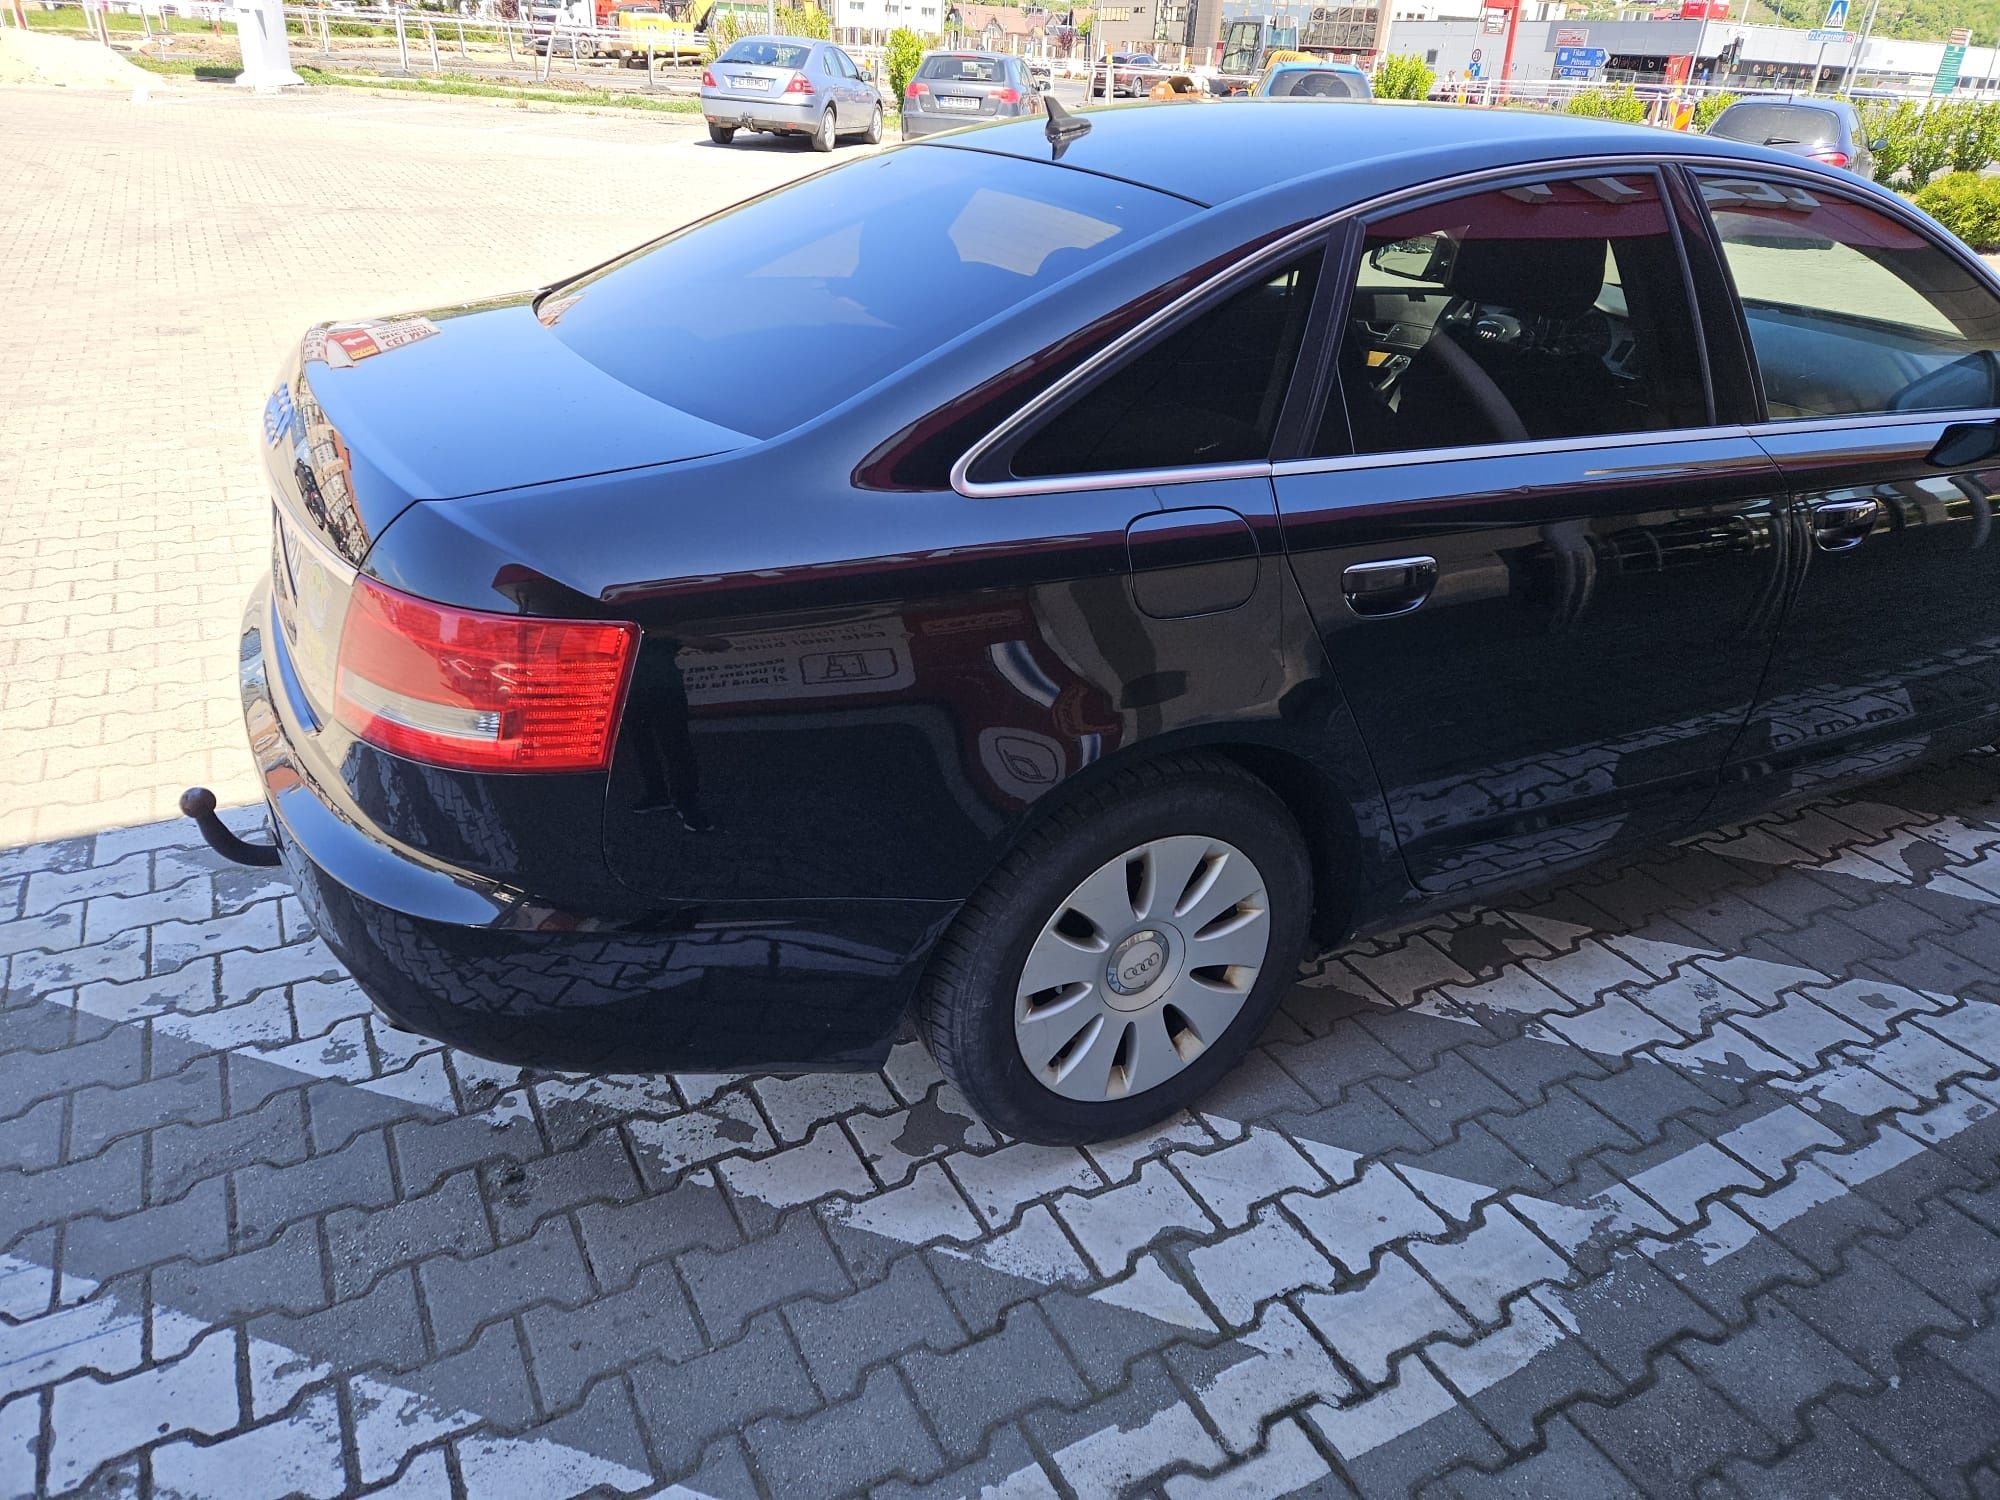 Audi a6 c6 negru